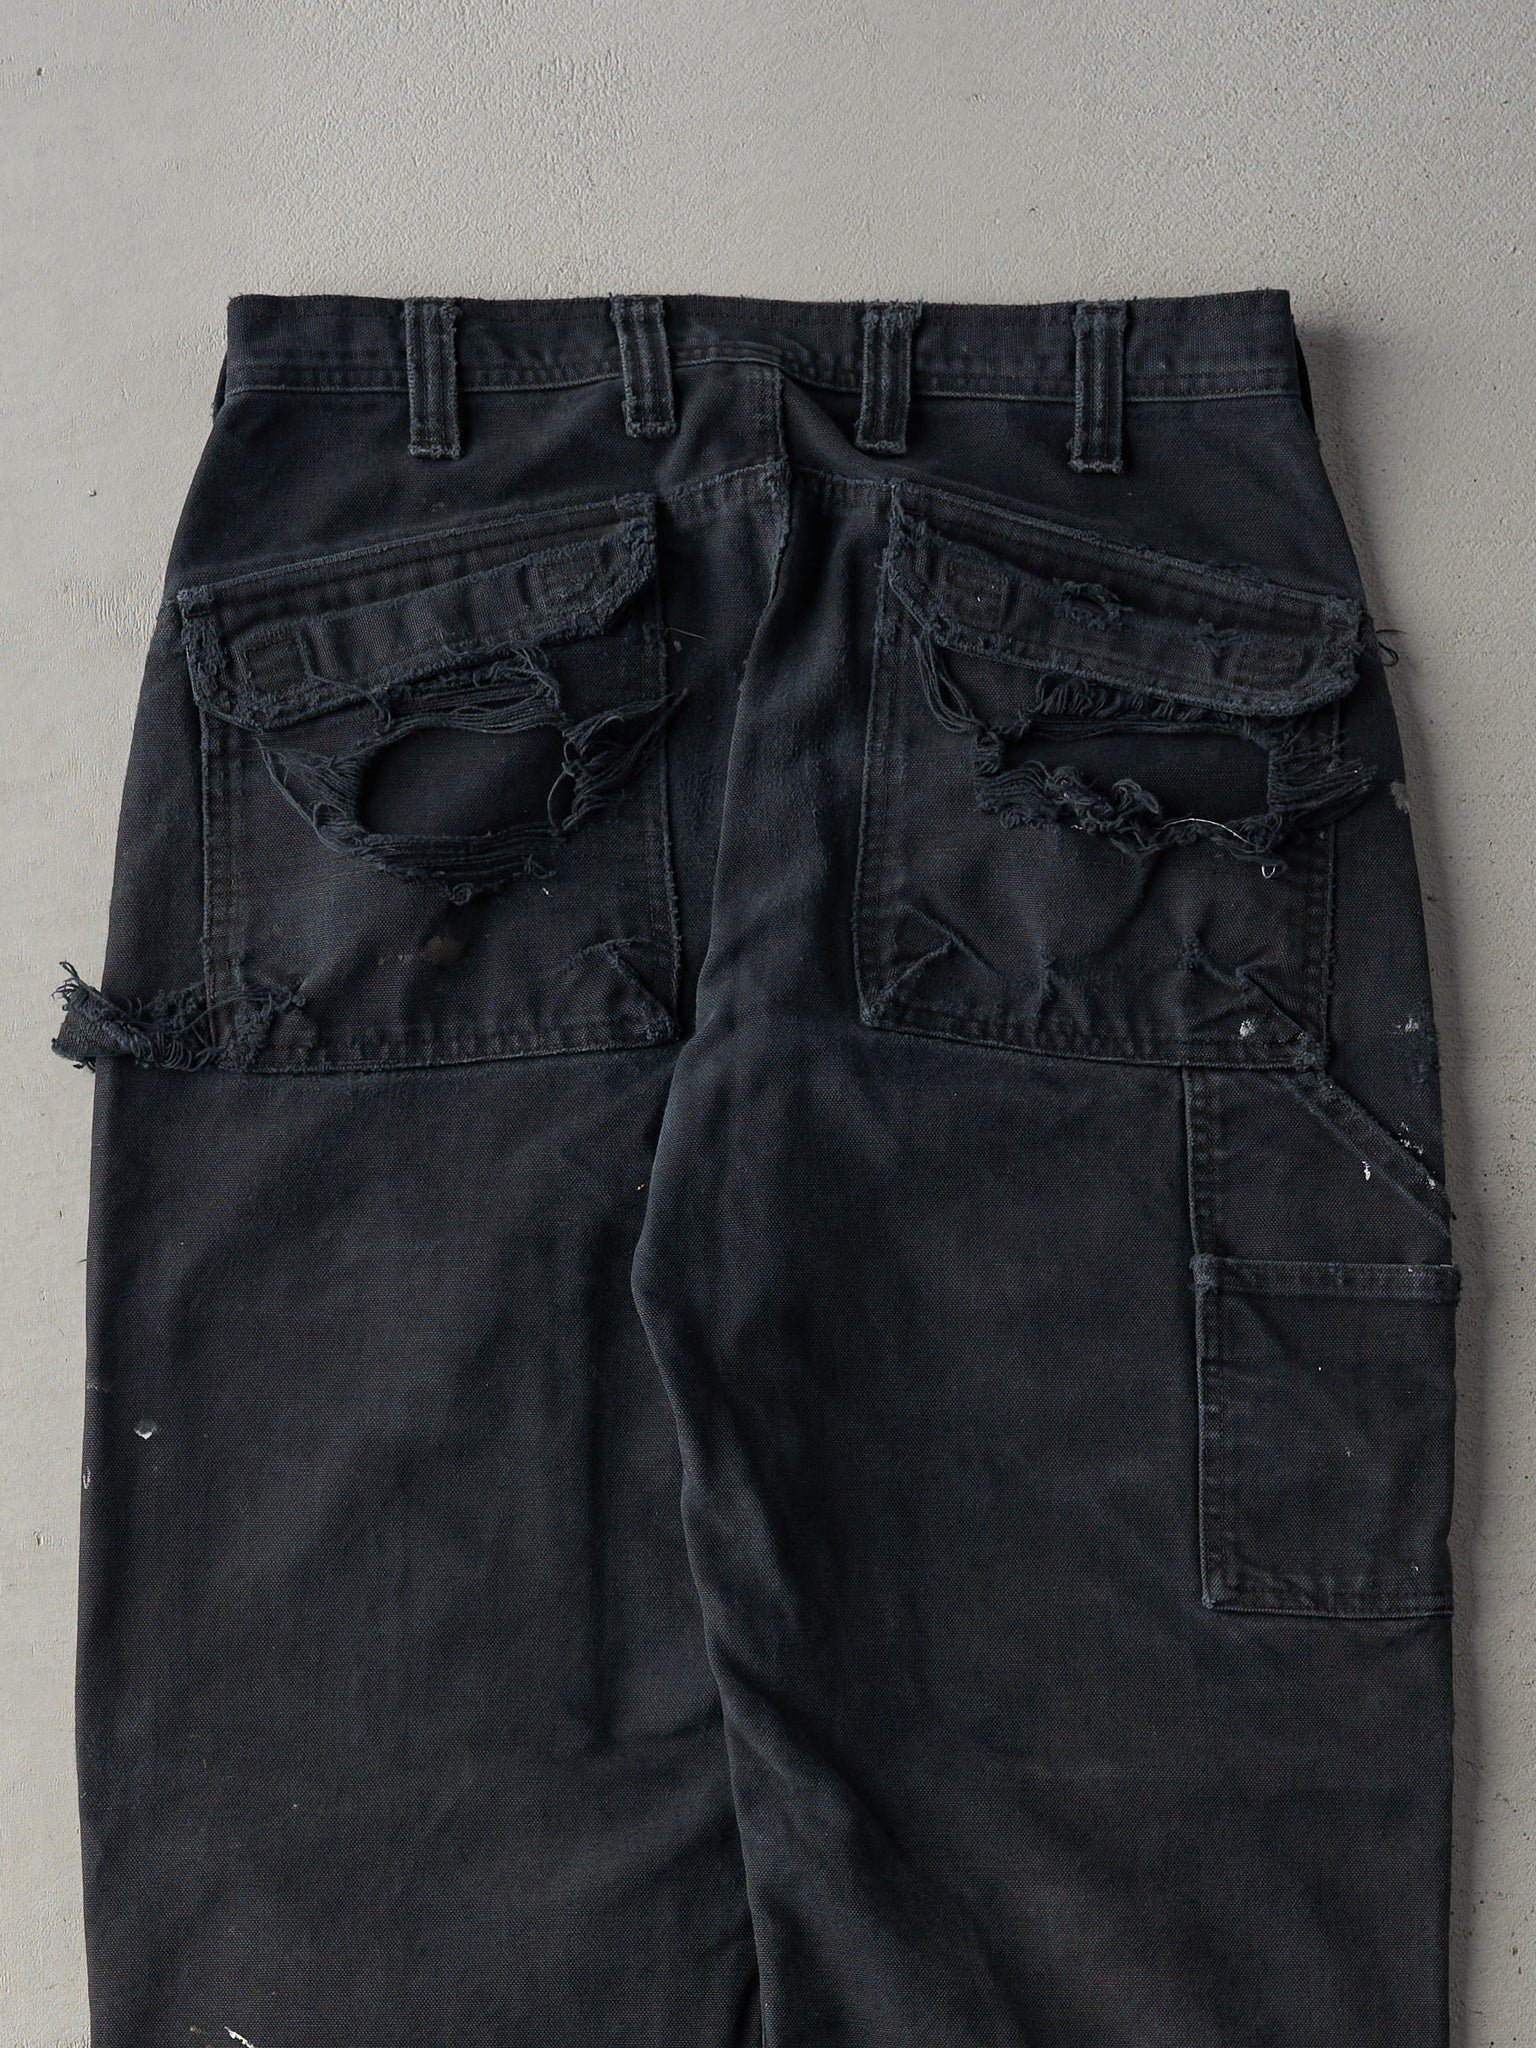 Vintage RARE 90s Black Original Fit Carhartt Double Knee Carpenter Pants (31x30.5)